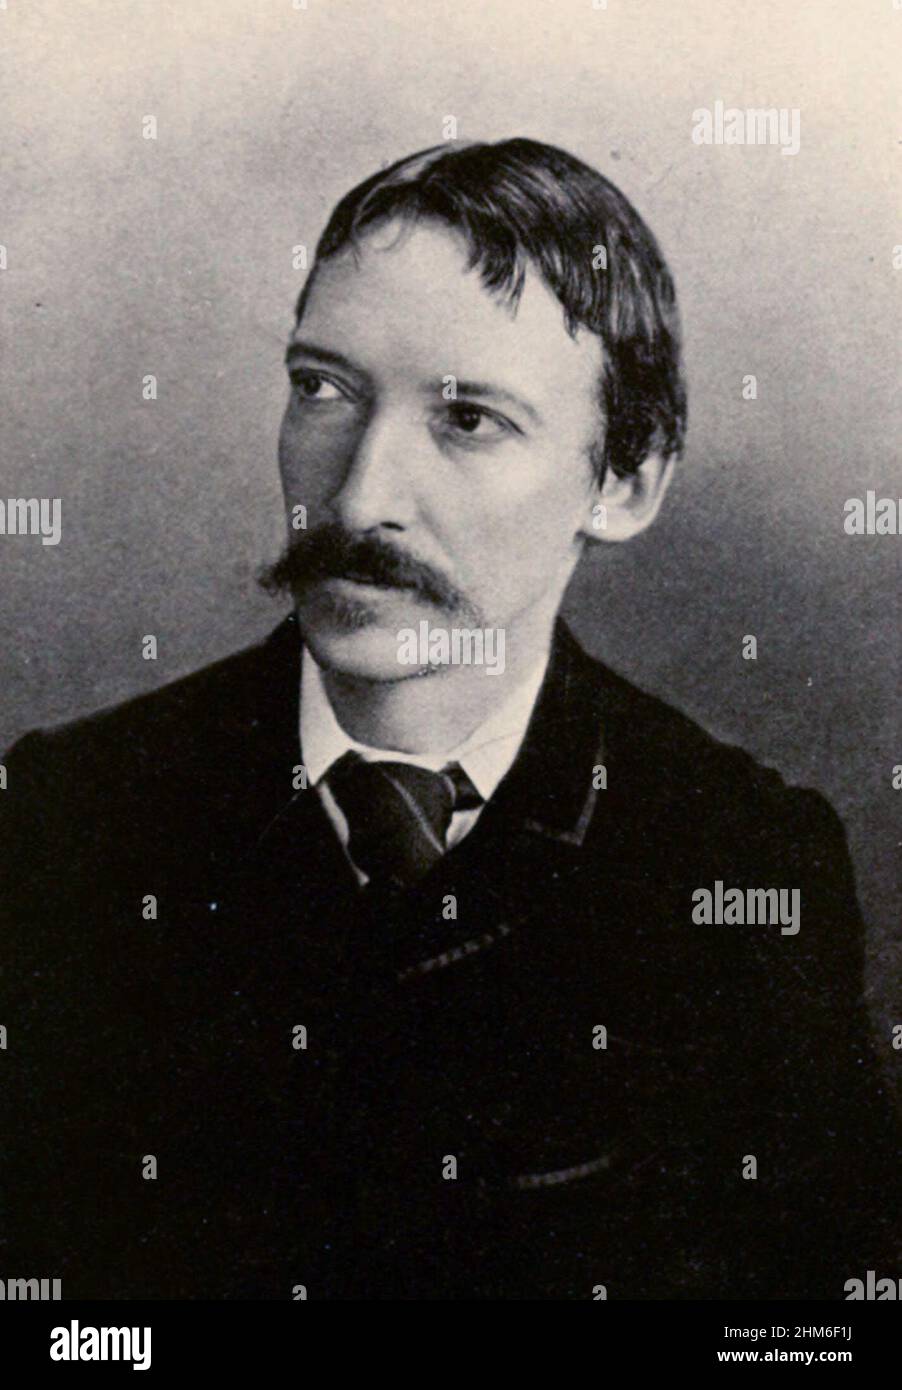 Ein Porträt des schottischen Schriftstellers Robert Louis Stevenson, Autor von Treasure Island and the Black Arrow, von 1893. Er ist 43 Jahre alt. Stockfoto